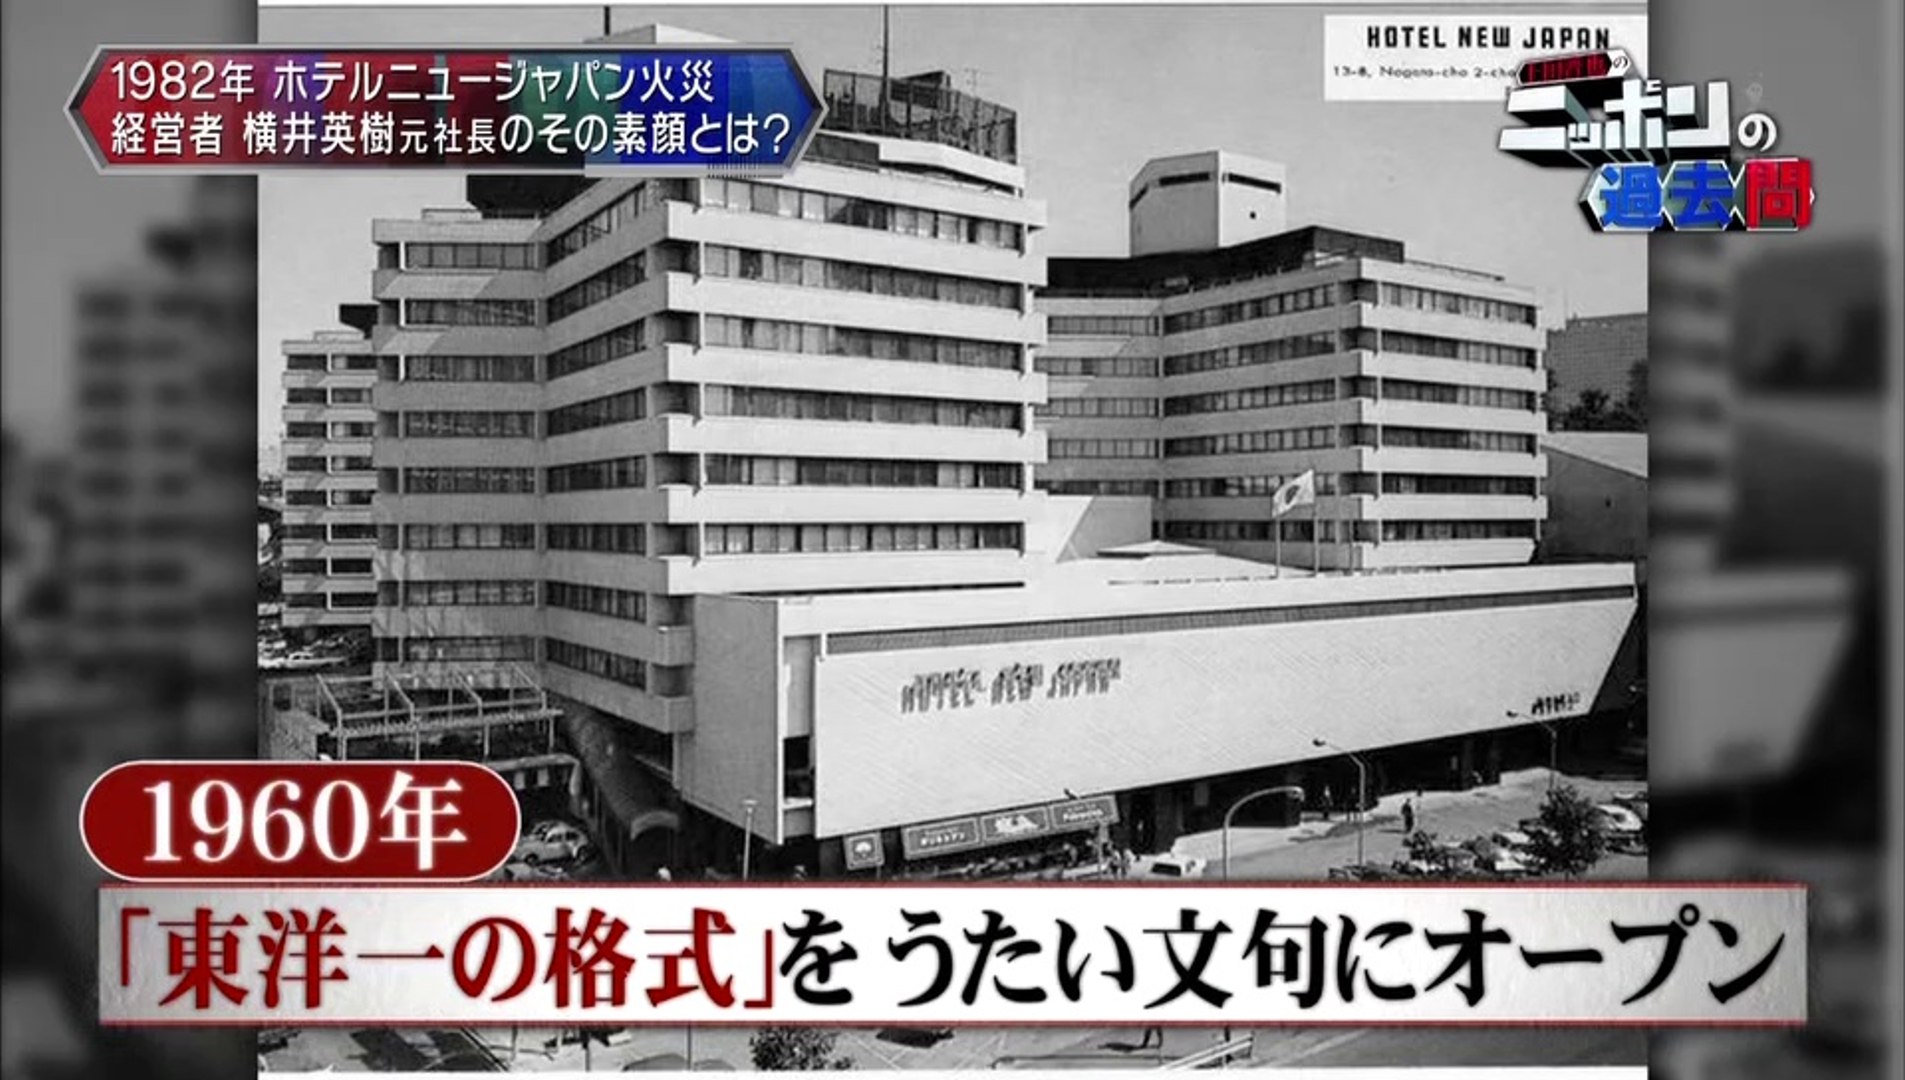 横井 ジャパン ホテル ニュー ホテルニュージャパン火災の横井社長の黄金風呂に叶姉妹がいたってマジ？